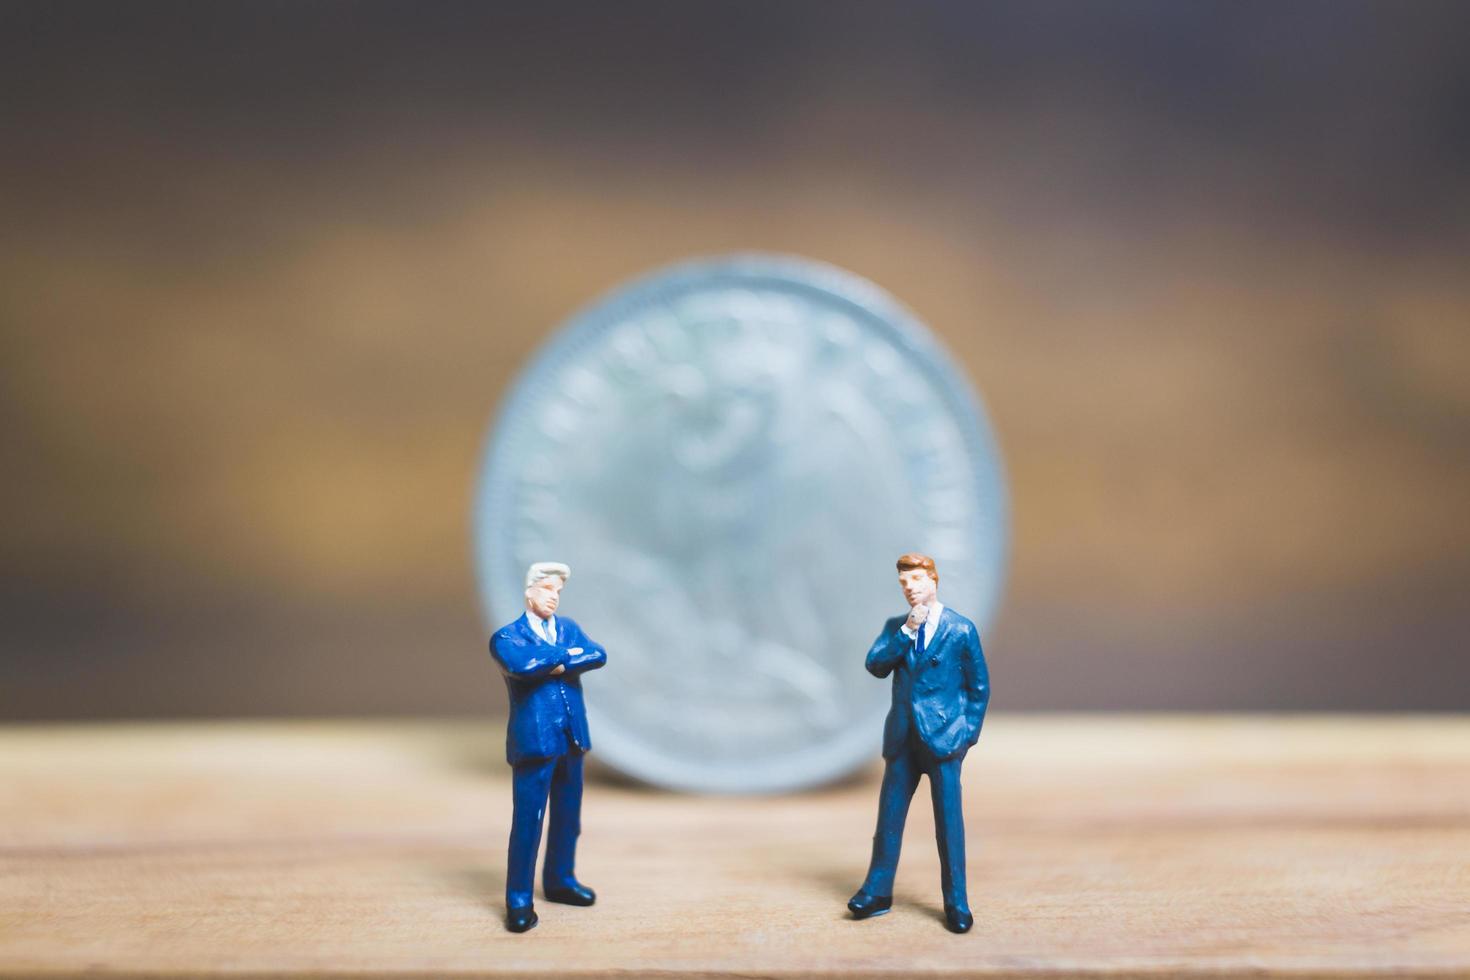 uomini d'affari in miniatura in piedi vicino a una moneta con uno sfondo di legno, concetto di affari foto